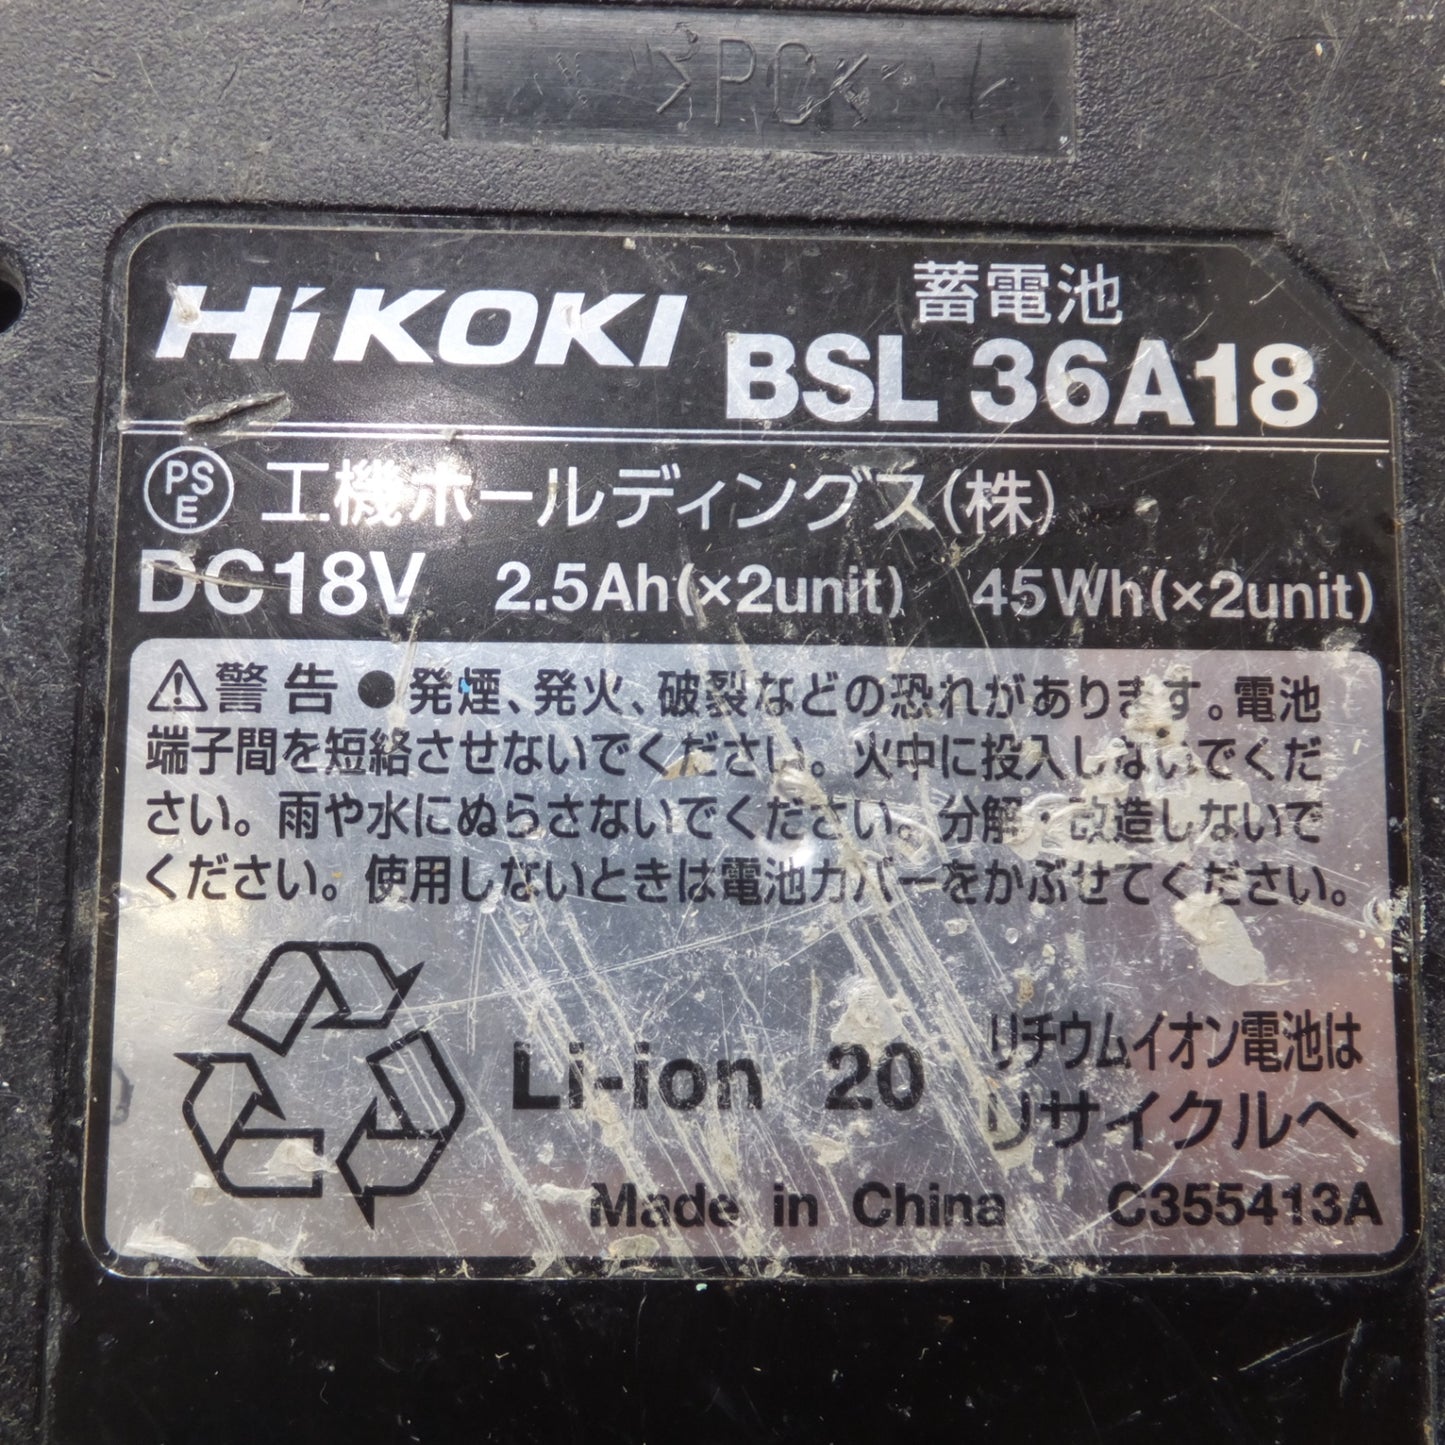 [送料無料] ★ハイコーキ HiKOKI 蓄電池 BSL36A18　DC18V 2.5Ah(×2unit) 45Wh(×2unit) Li-ion 20★